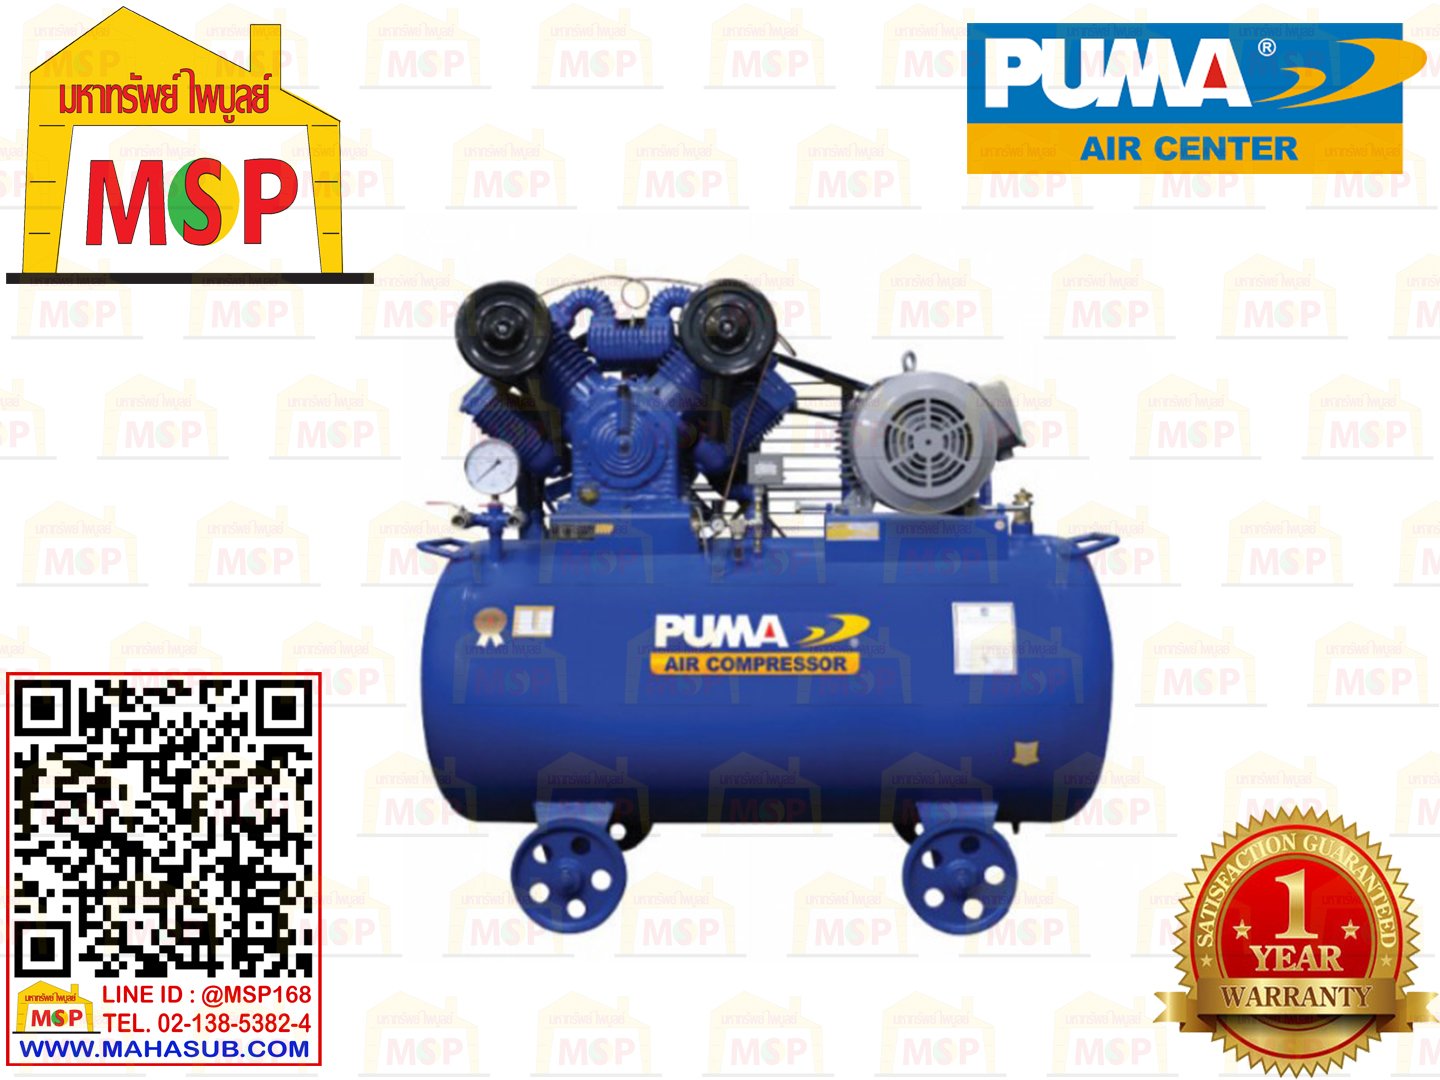 Puma เฉพาะ ถังปั๊มลมพร้อมหัวปั๊ม PP-430 30HP 4ลูกสูบ 800L 8BAR ไม่รวมมอเตอร์